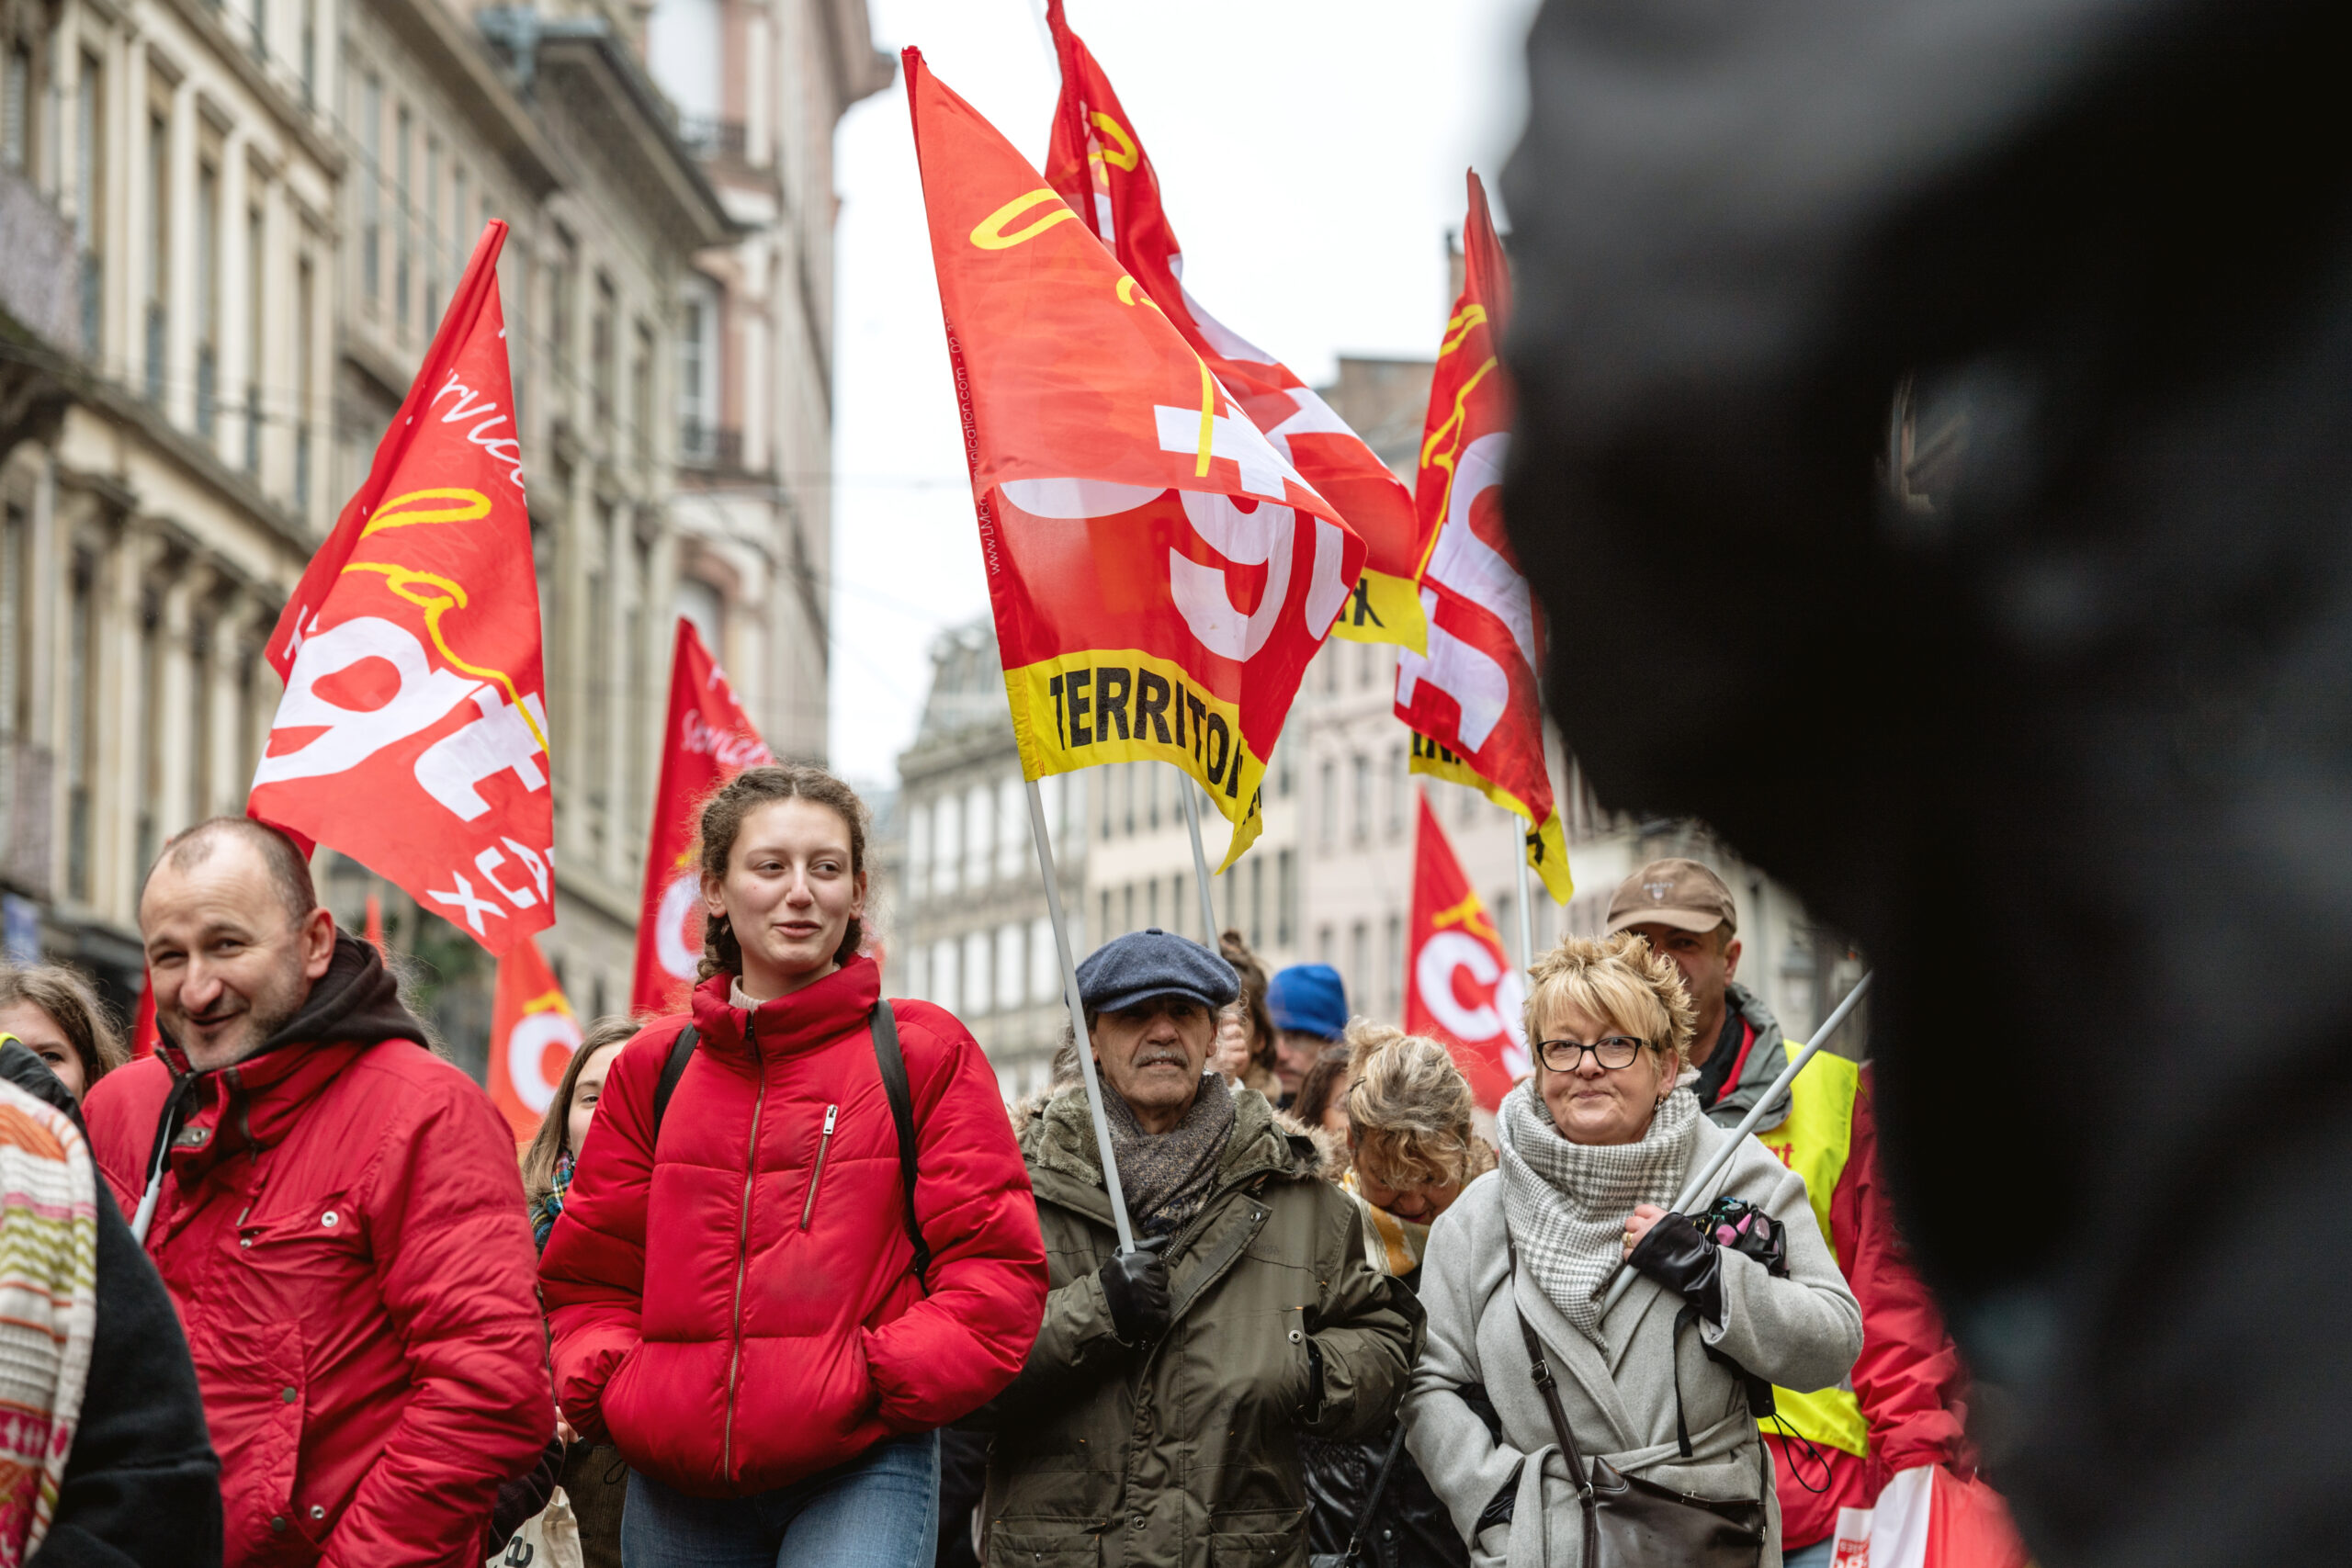 Frankreich: Streiks in Raffinerien, Energie und Häfen gegen Rentenreform